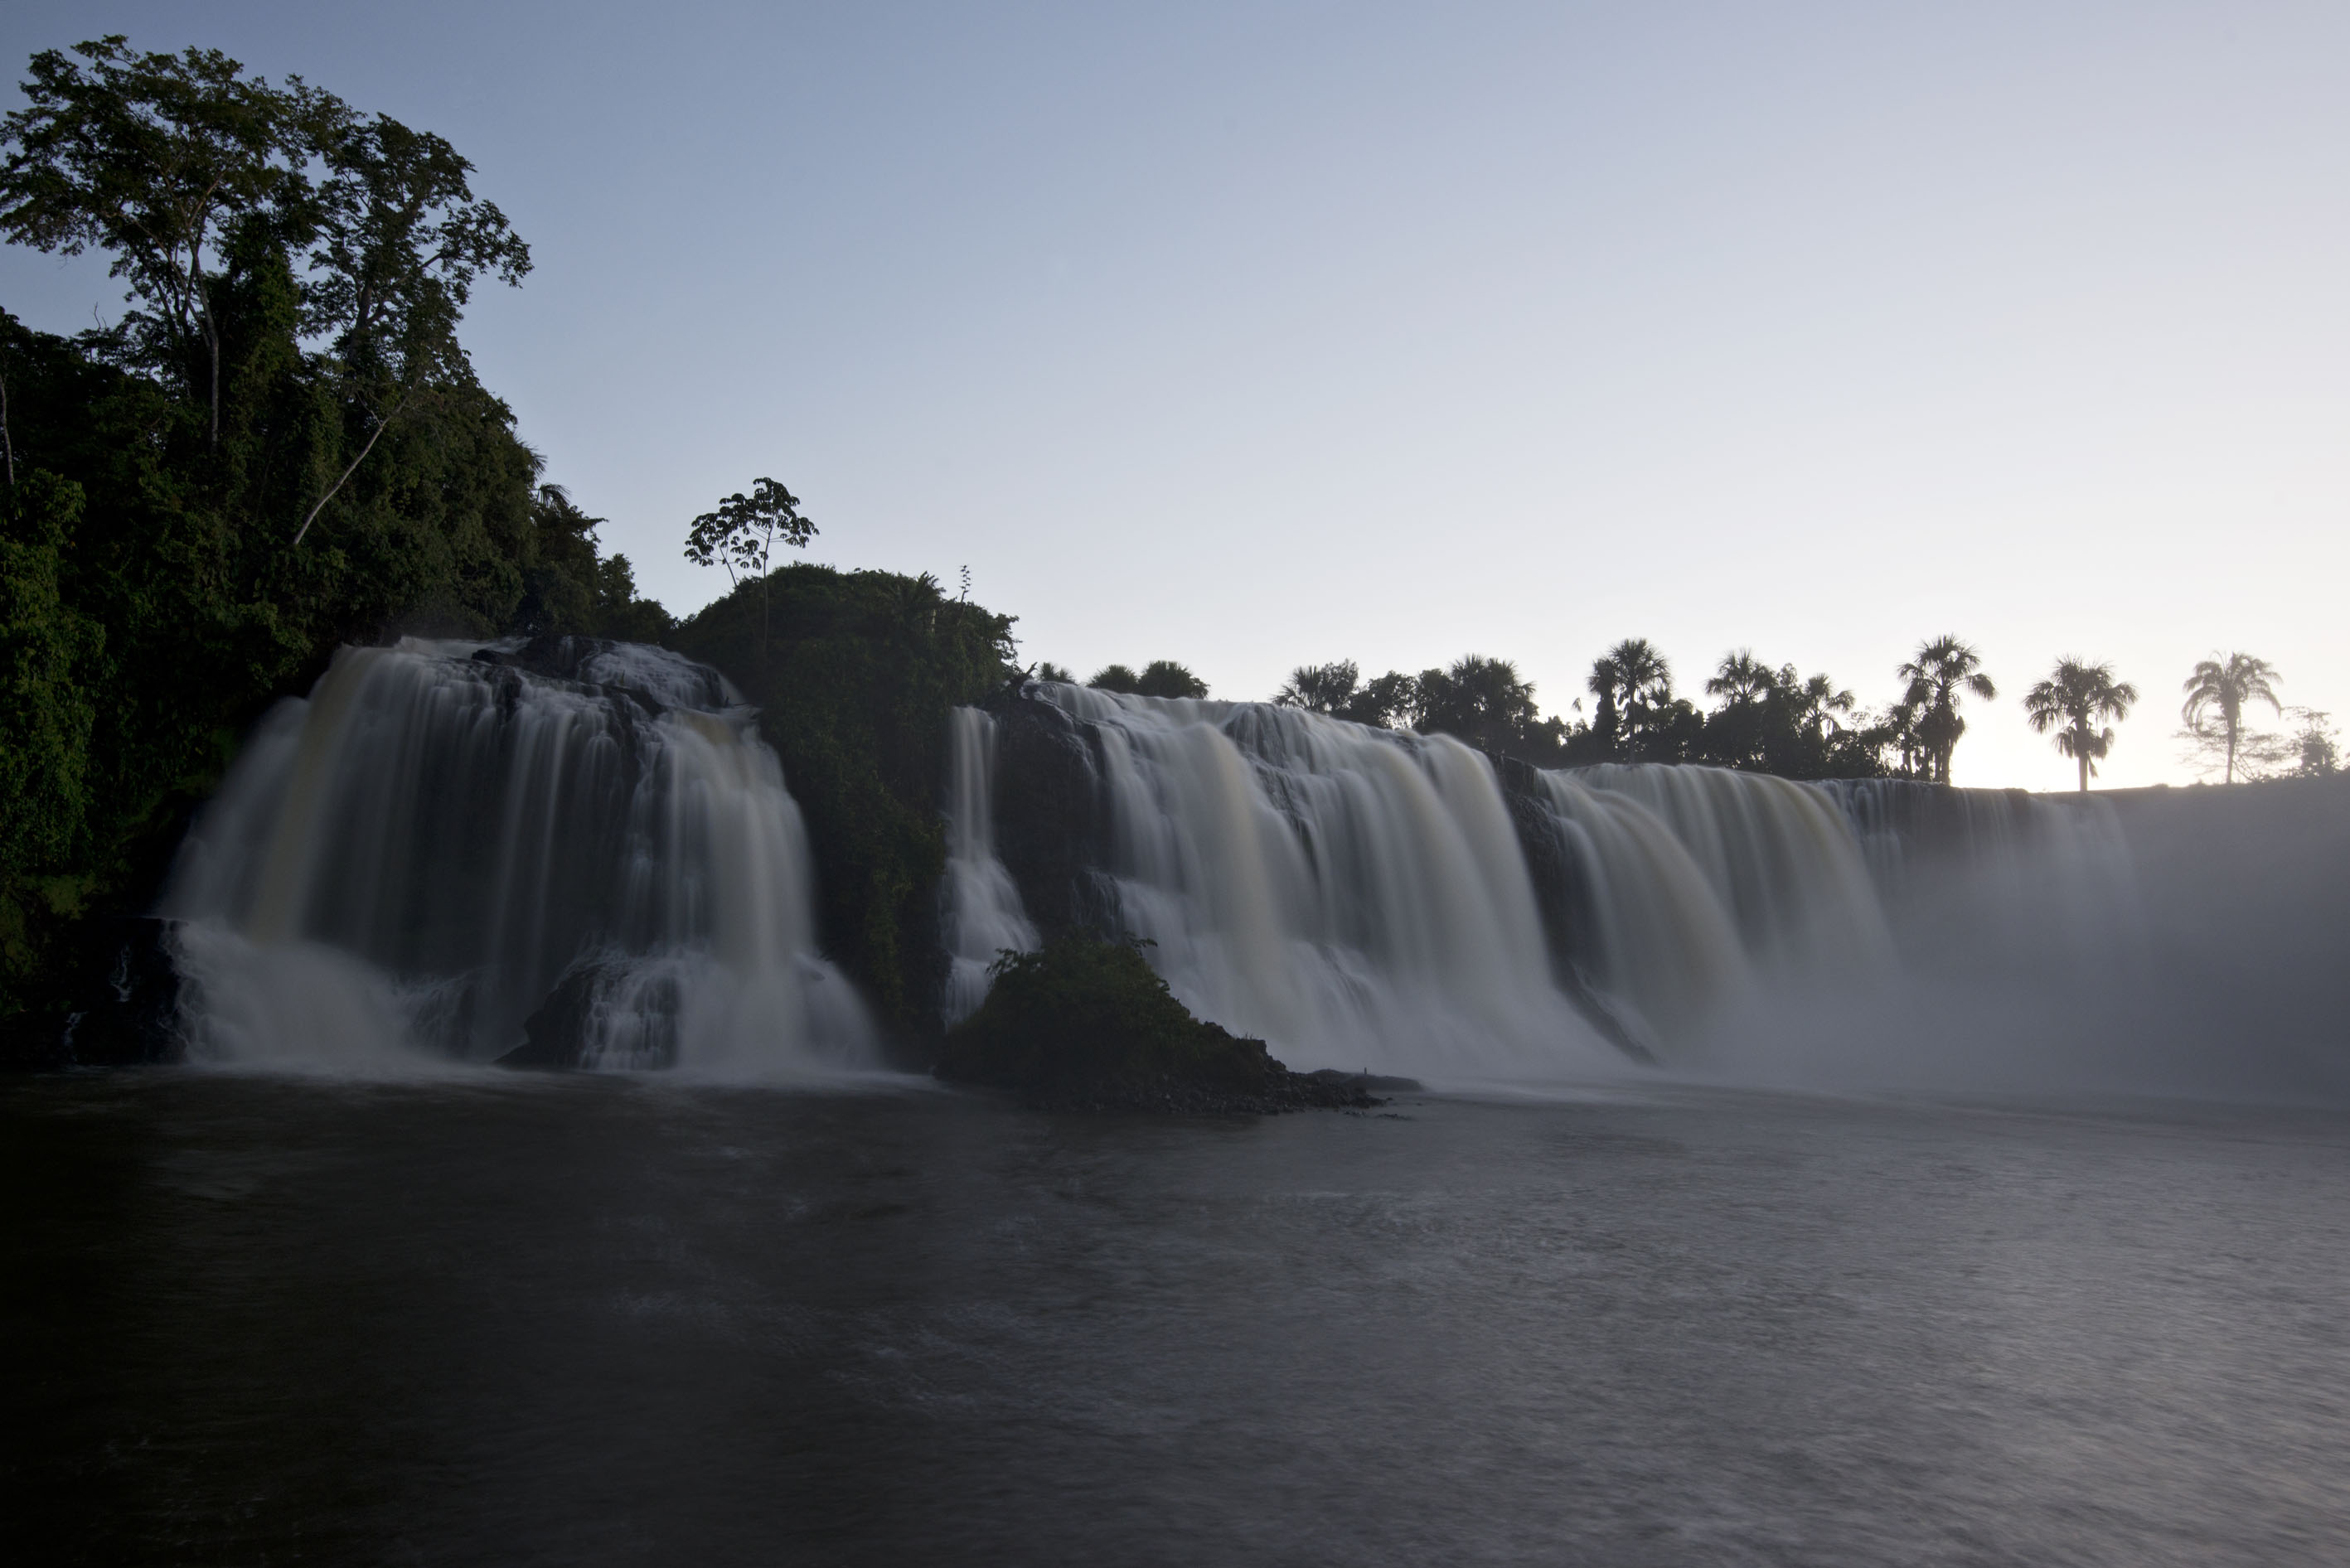 Situada em Tangará da Serra (MT), esta cachoeira é chamada de Salto das Nuvens e foi visitada pelos expedicionários em 2013